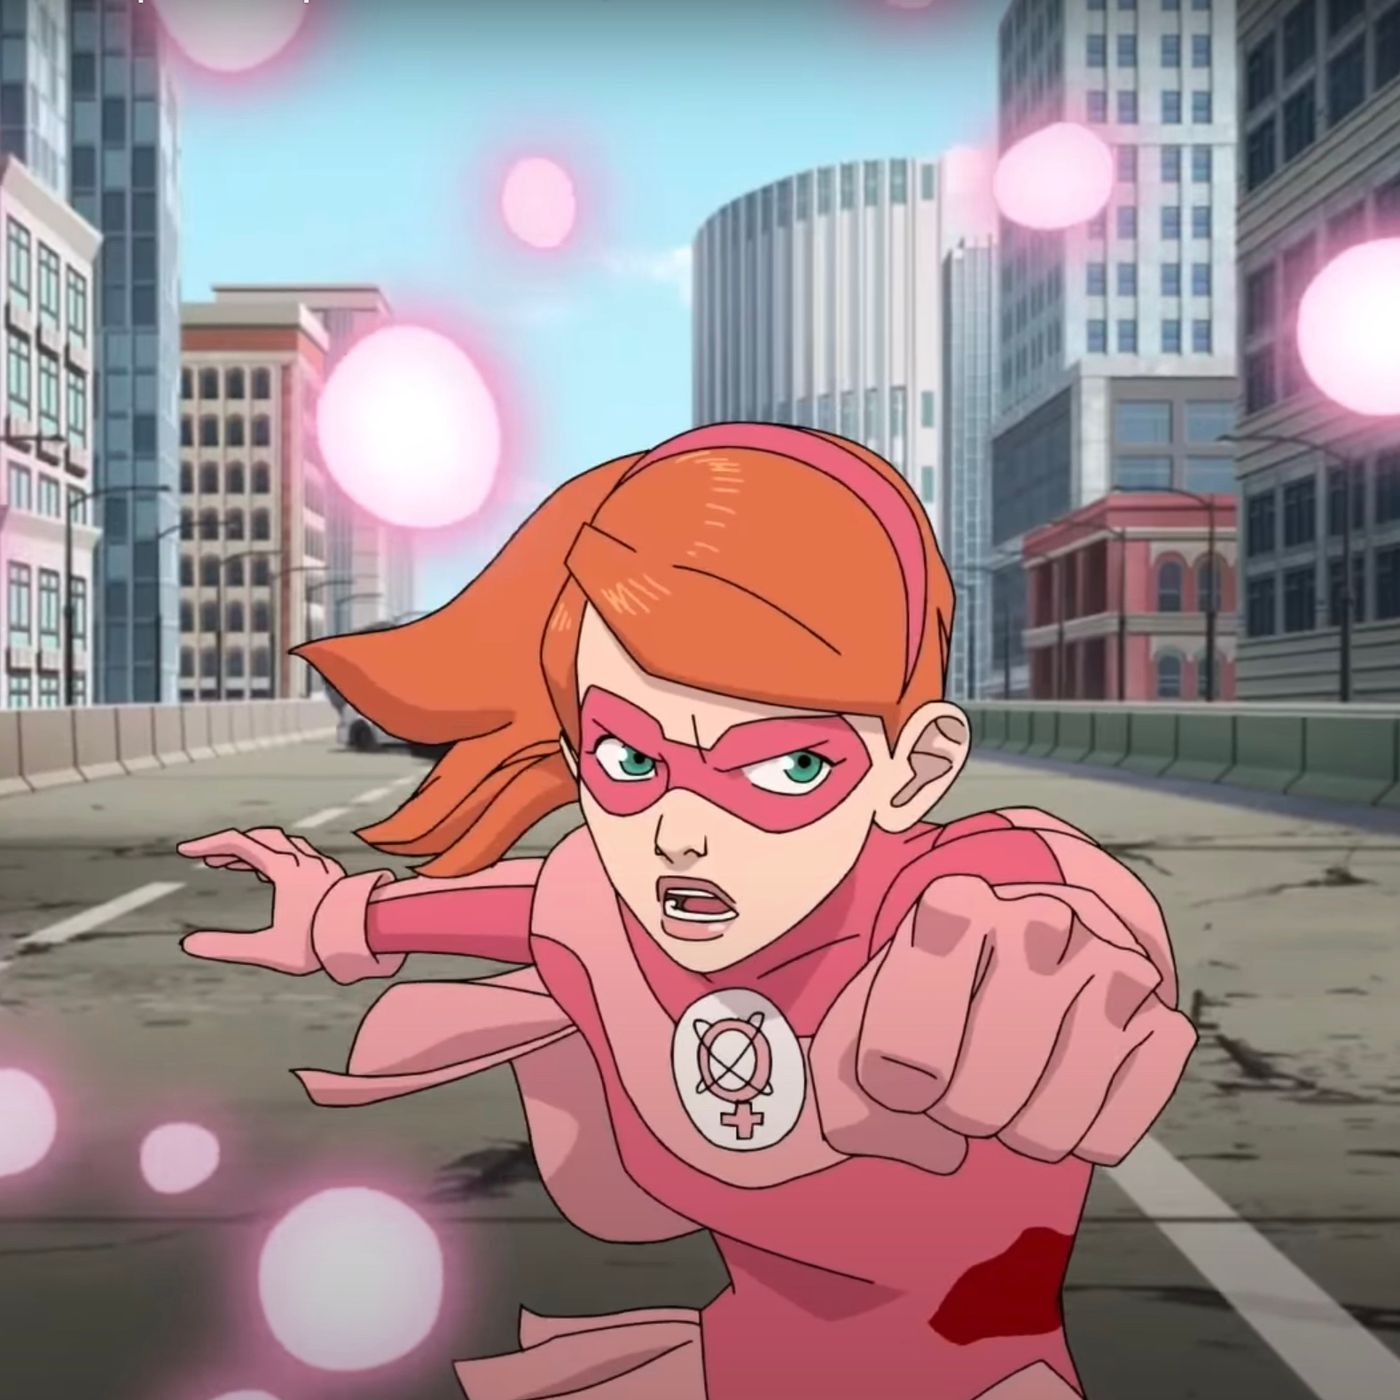 Invincible' season 2 teaser, 'Atom Eve' episode debut at Comic-Con